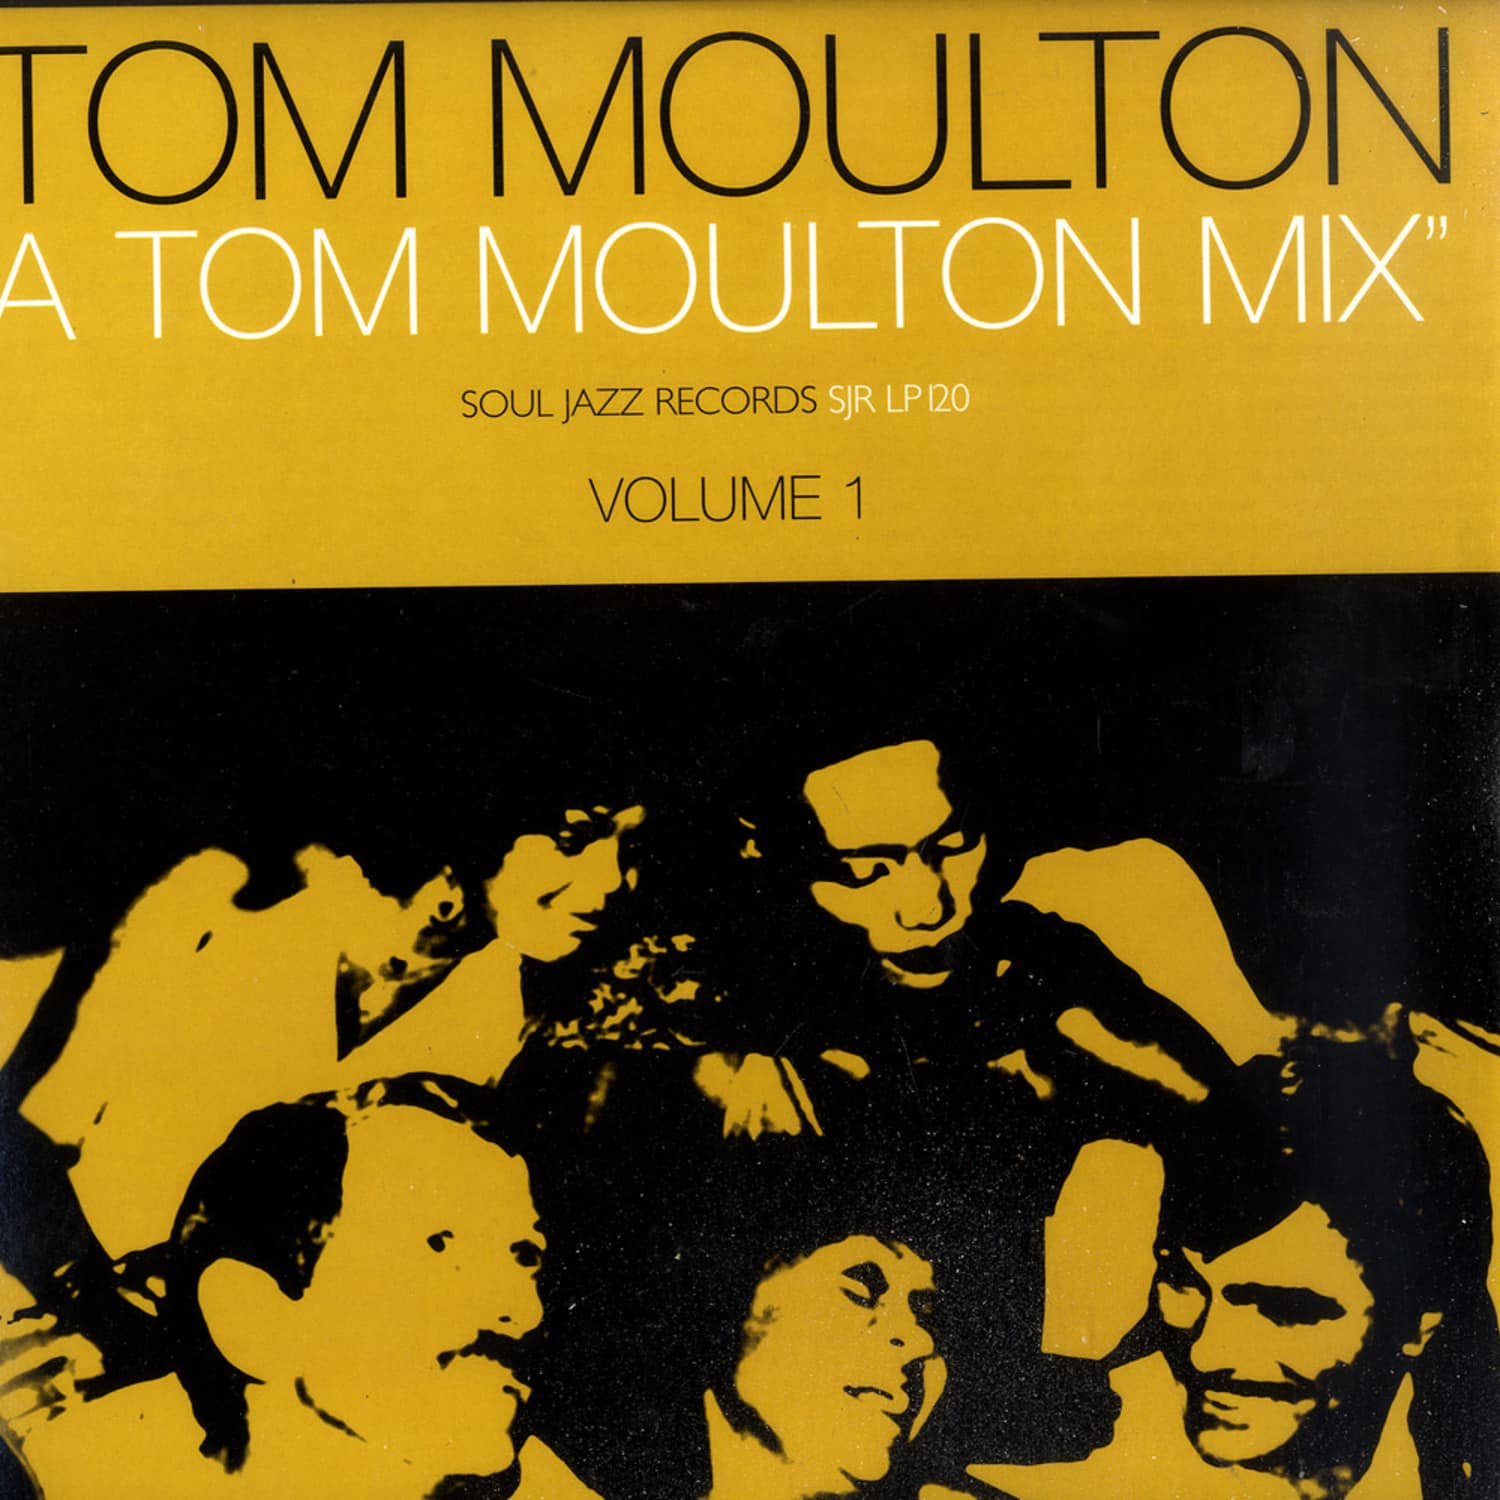 Various Artists - A TOM MOULTON MIX VOL.1 